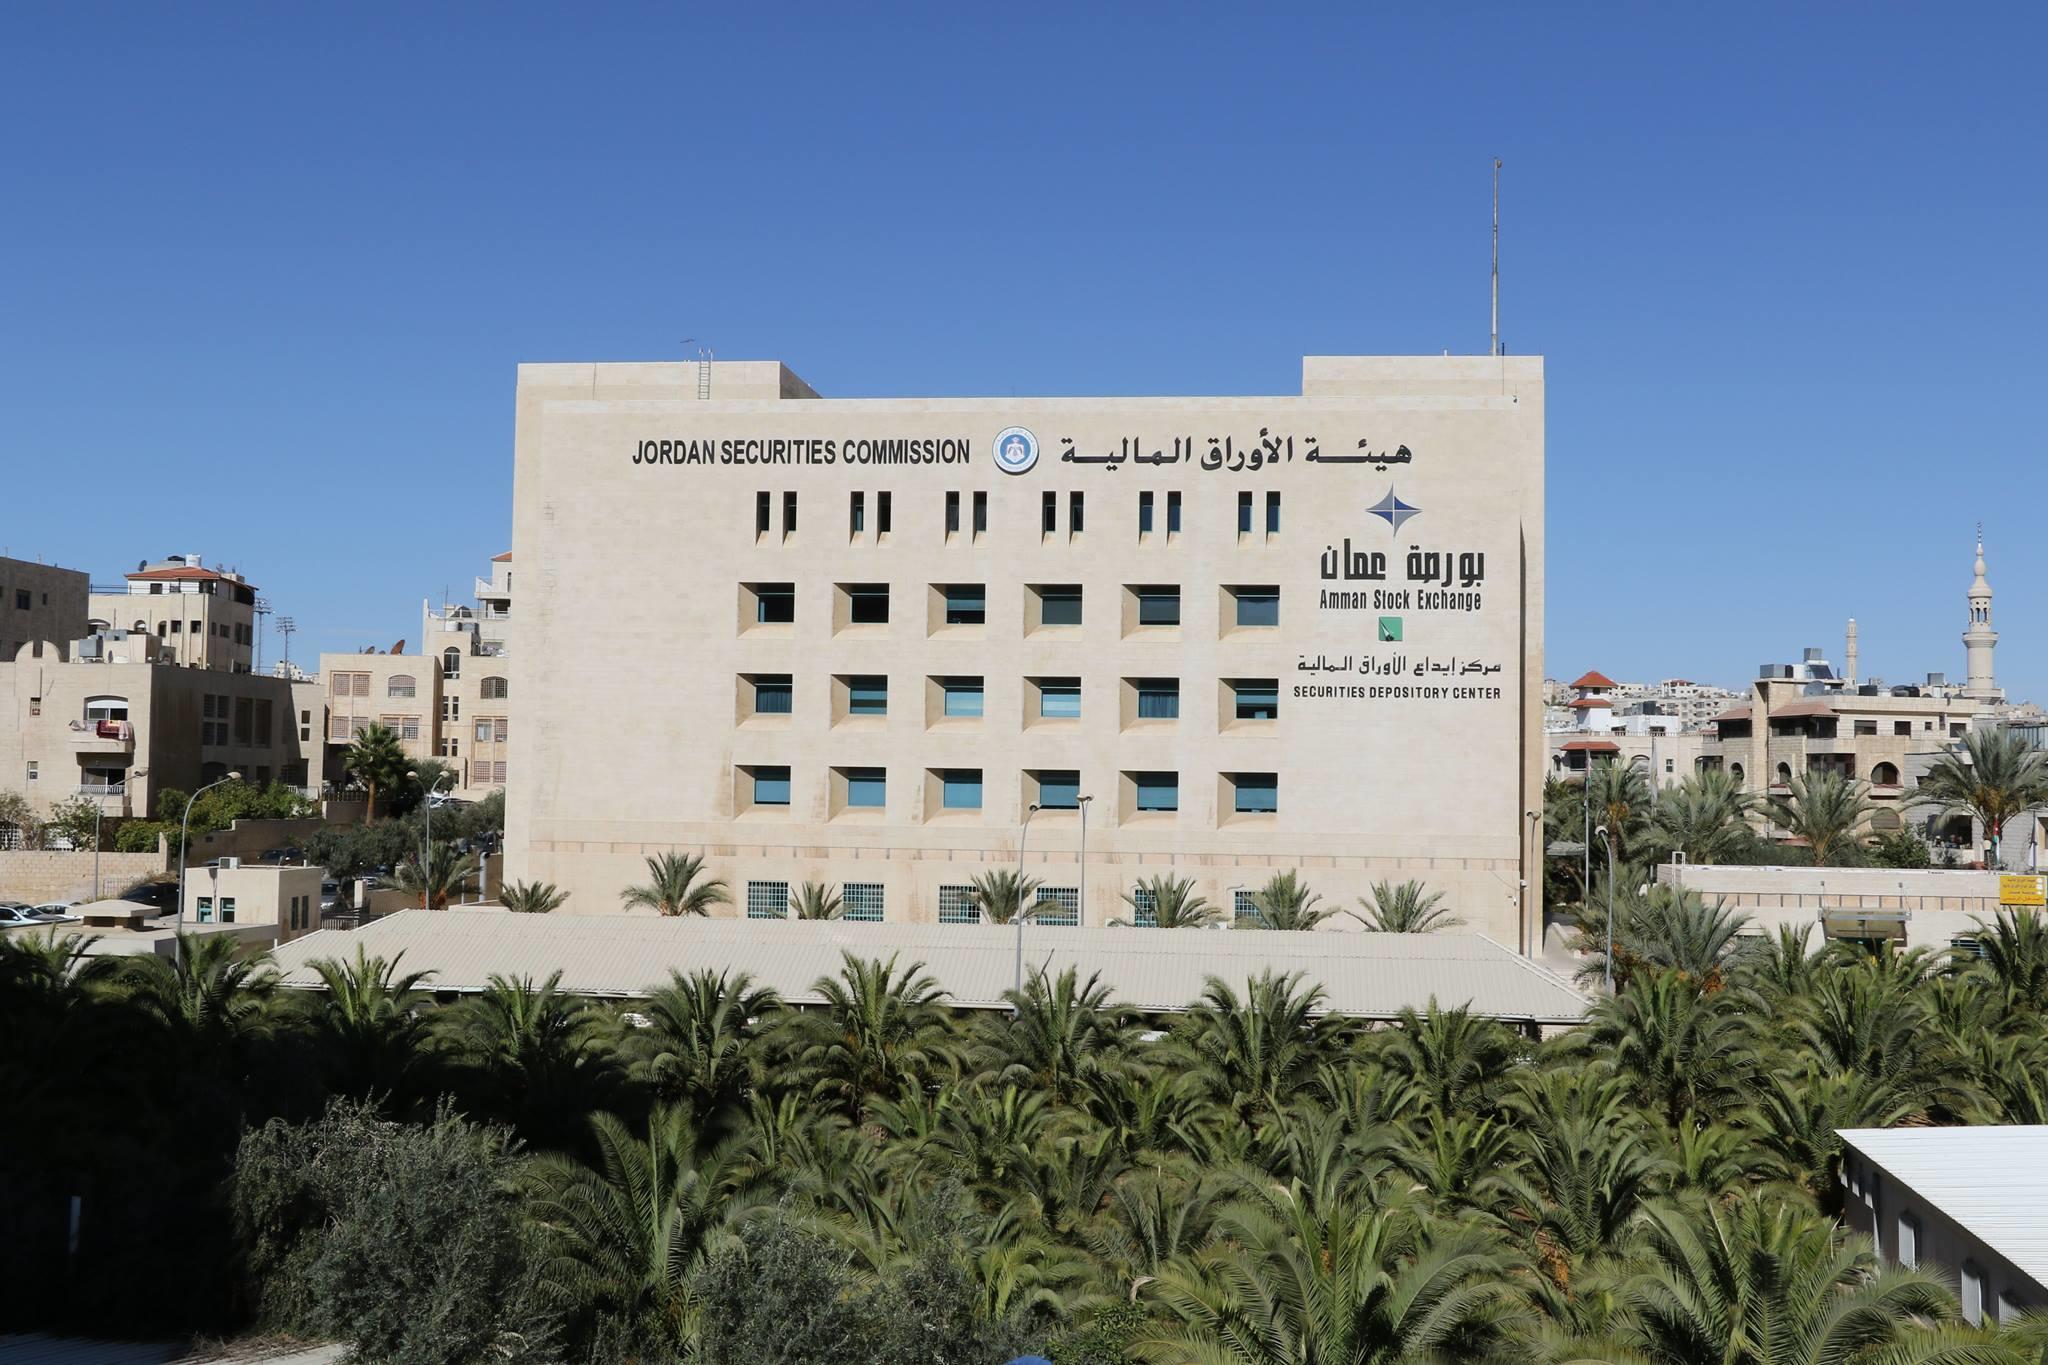 مبنى هيئة الأوراق المالية في عمان. صفحة الهيئة على موقع الفيس بوك.